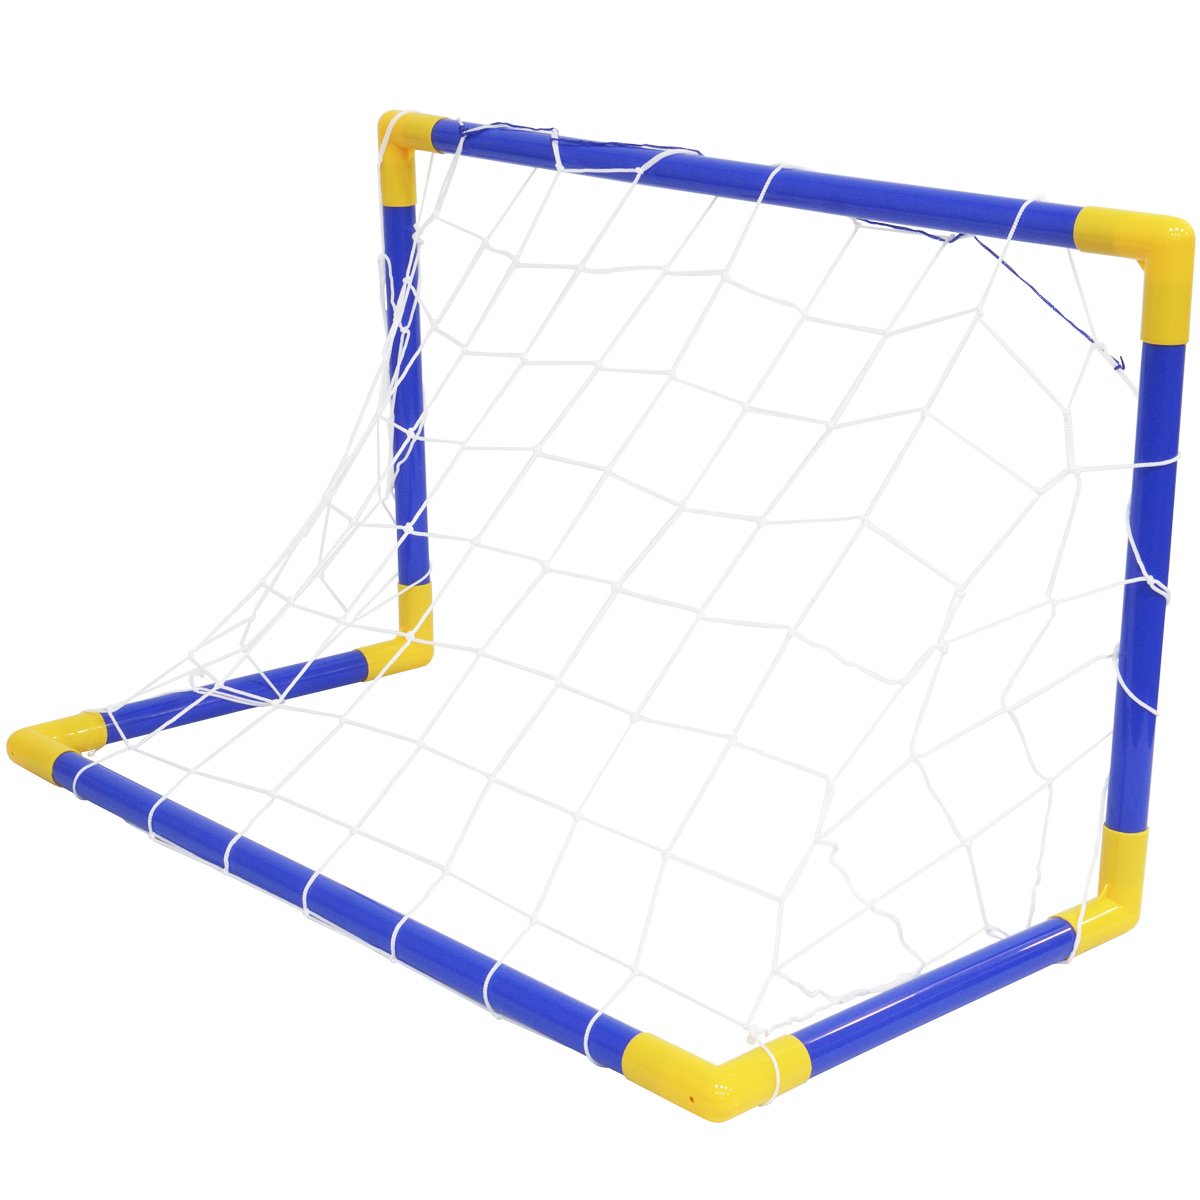 Kit 2 Mini Trave Gol De Futebol Infantil Jogo Com Bola